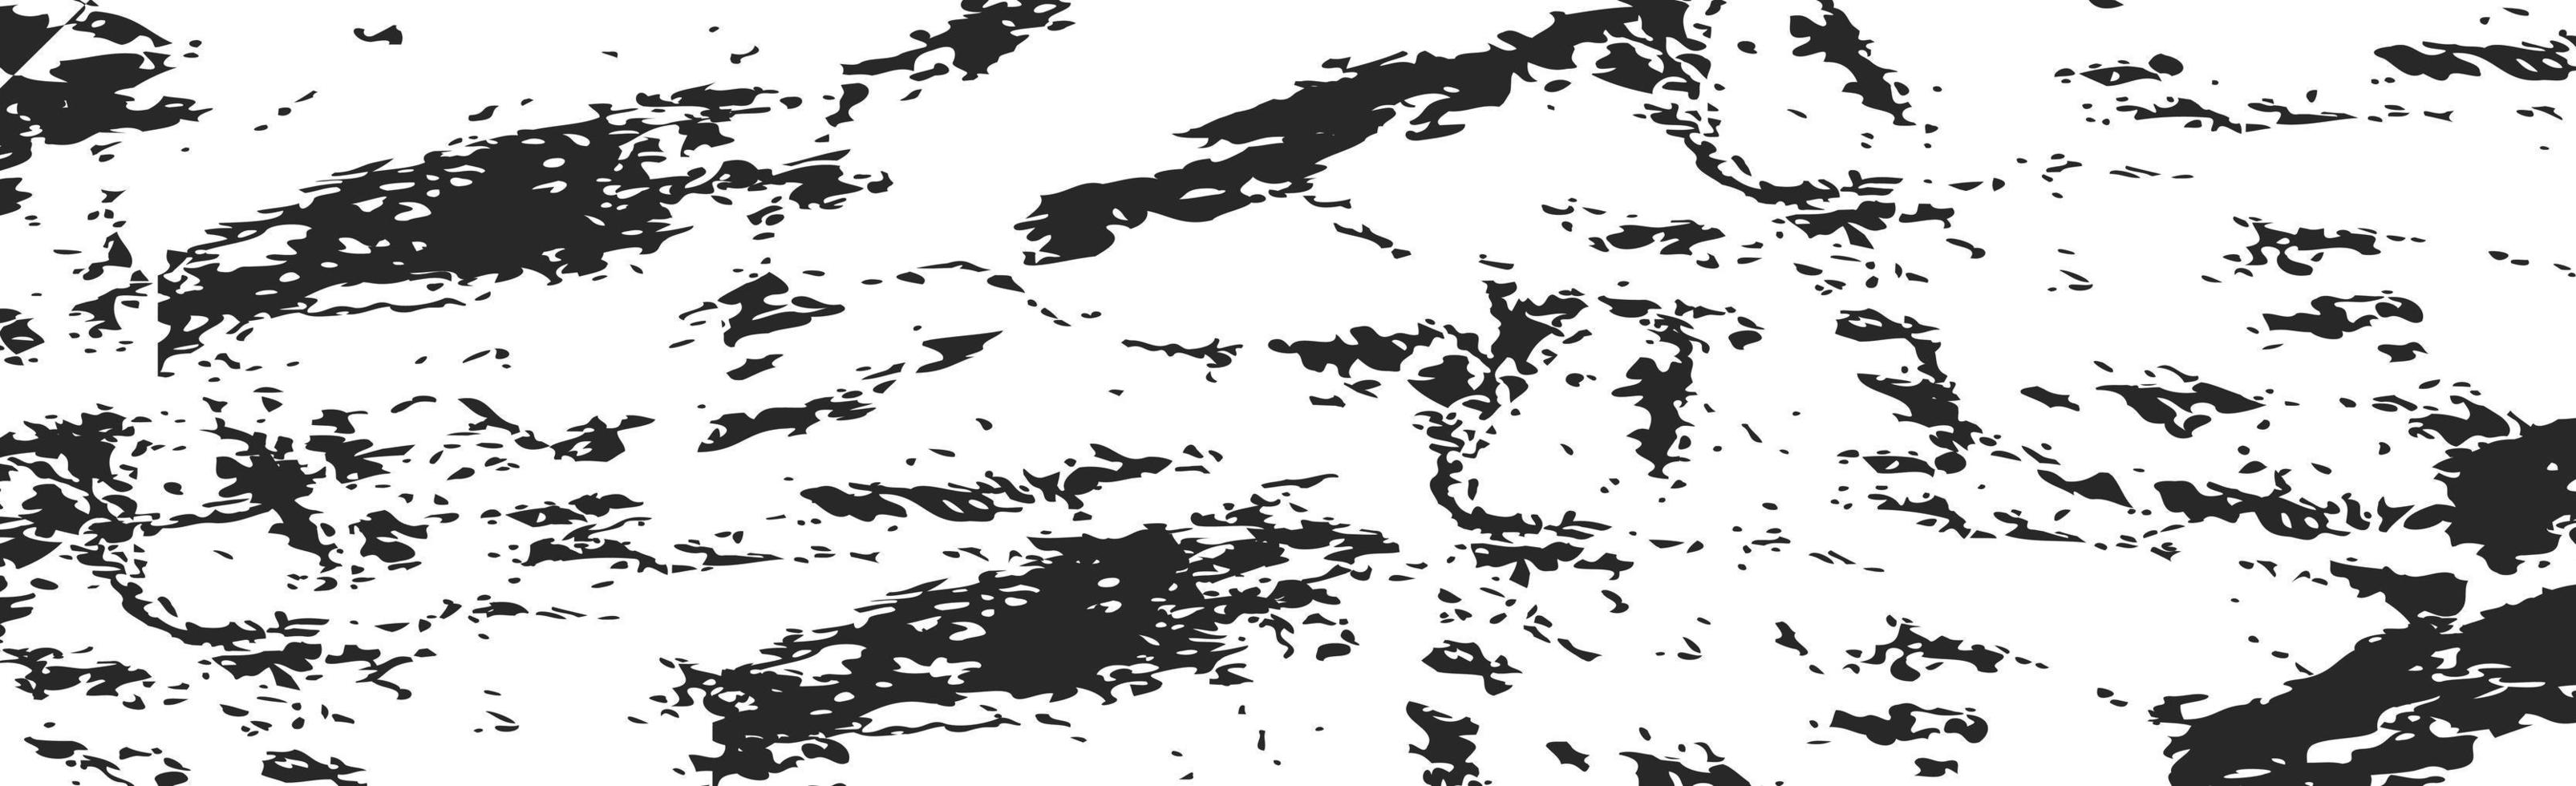 grunge svarta linjer och prickar på en vit bakgrund - vektor